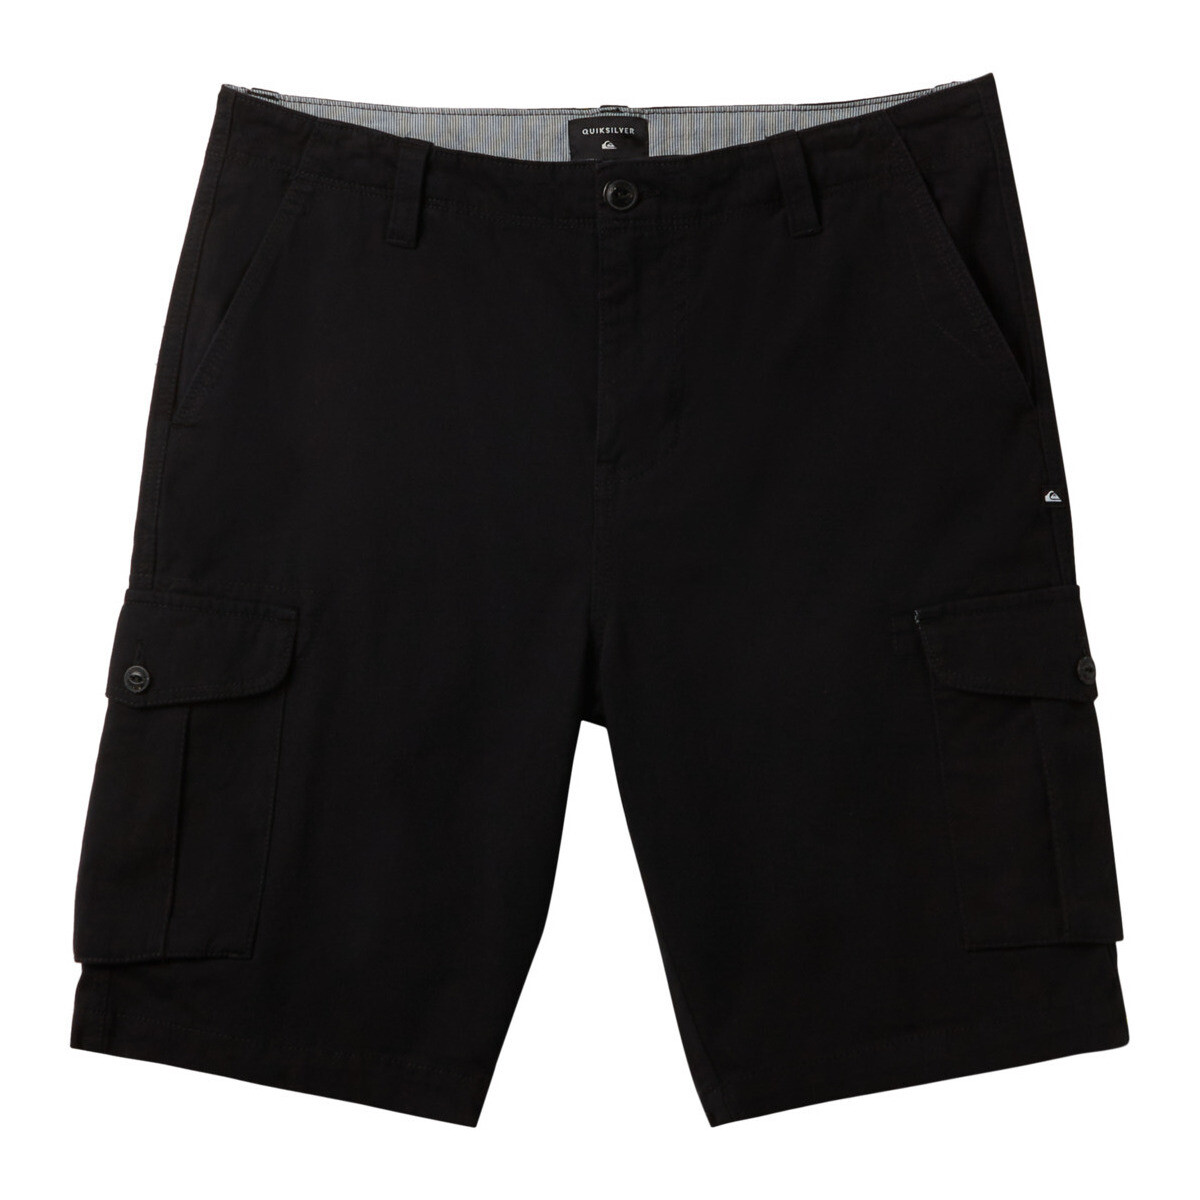 Vêtements Homme Shorts / Bermudas Quiksilver Crucial Battle Cargo Noir